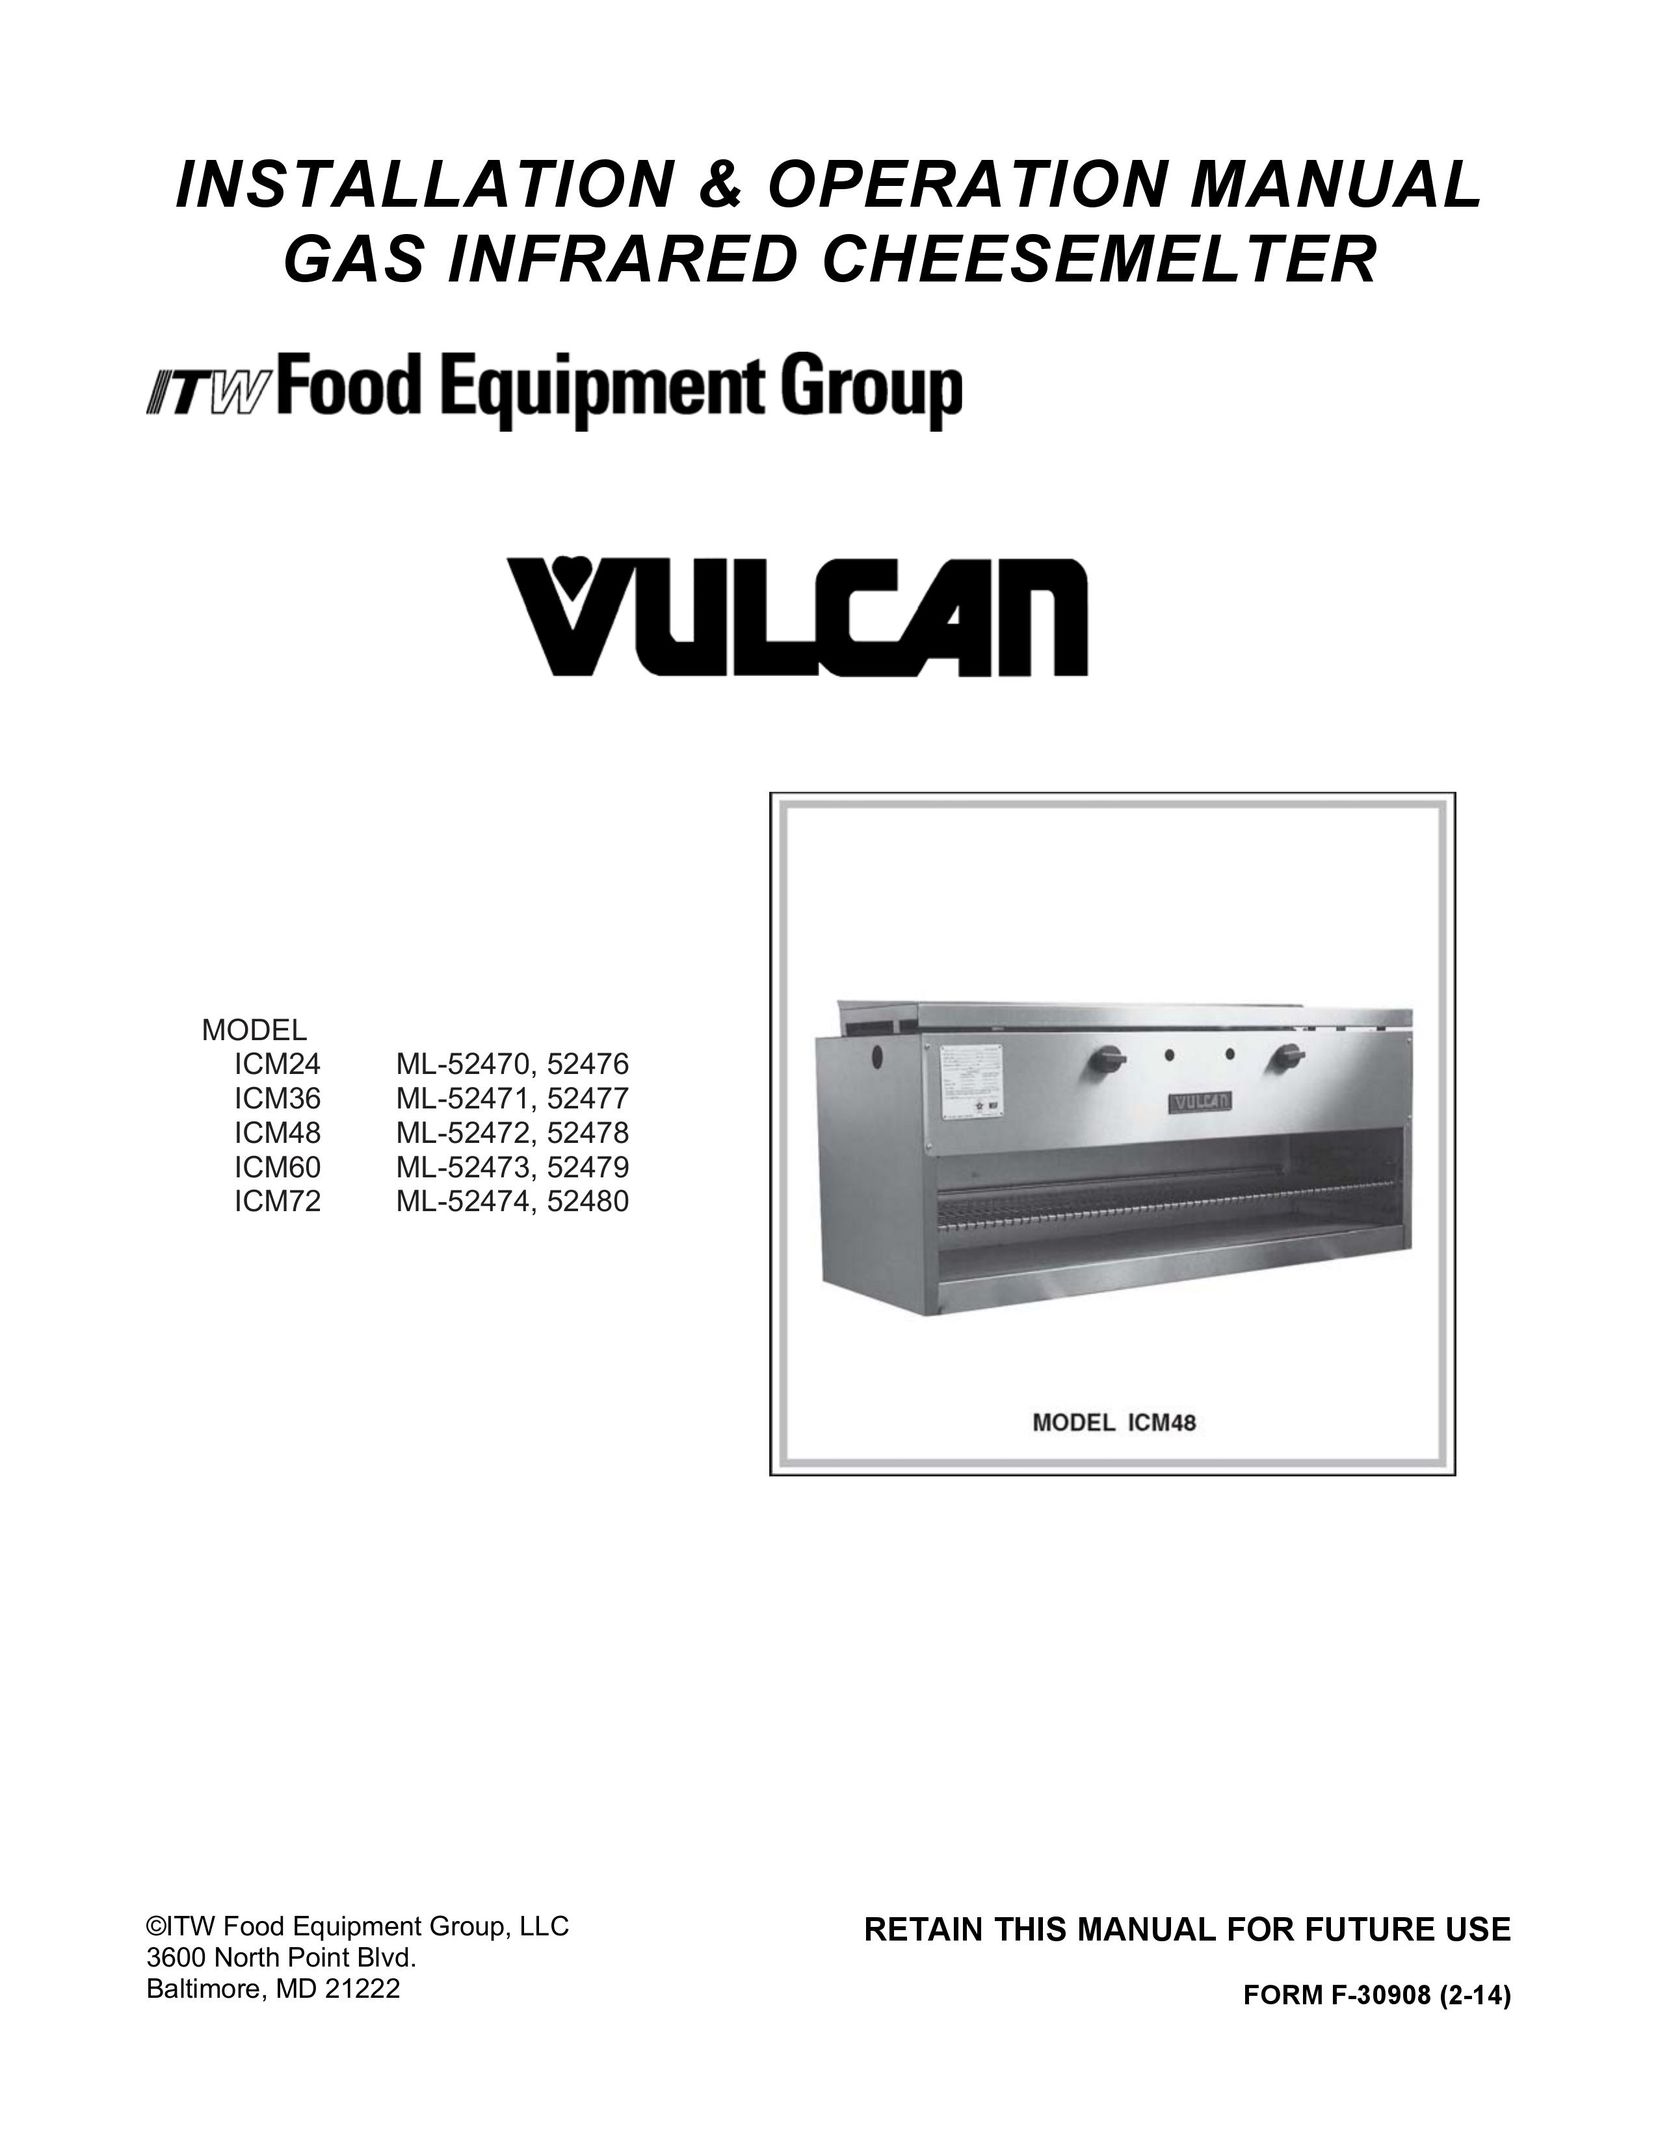 Vulcan-Hart 52479 Fondue Maker User Manual